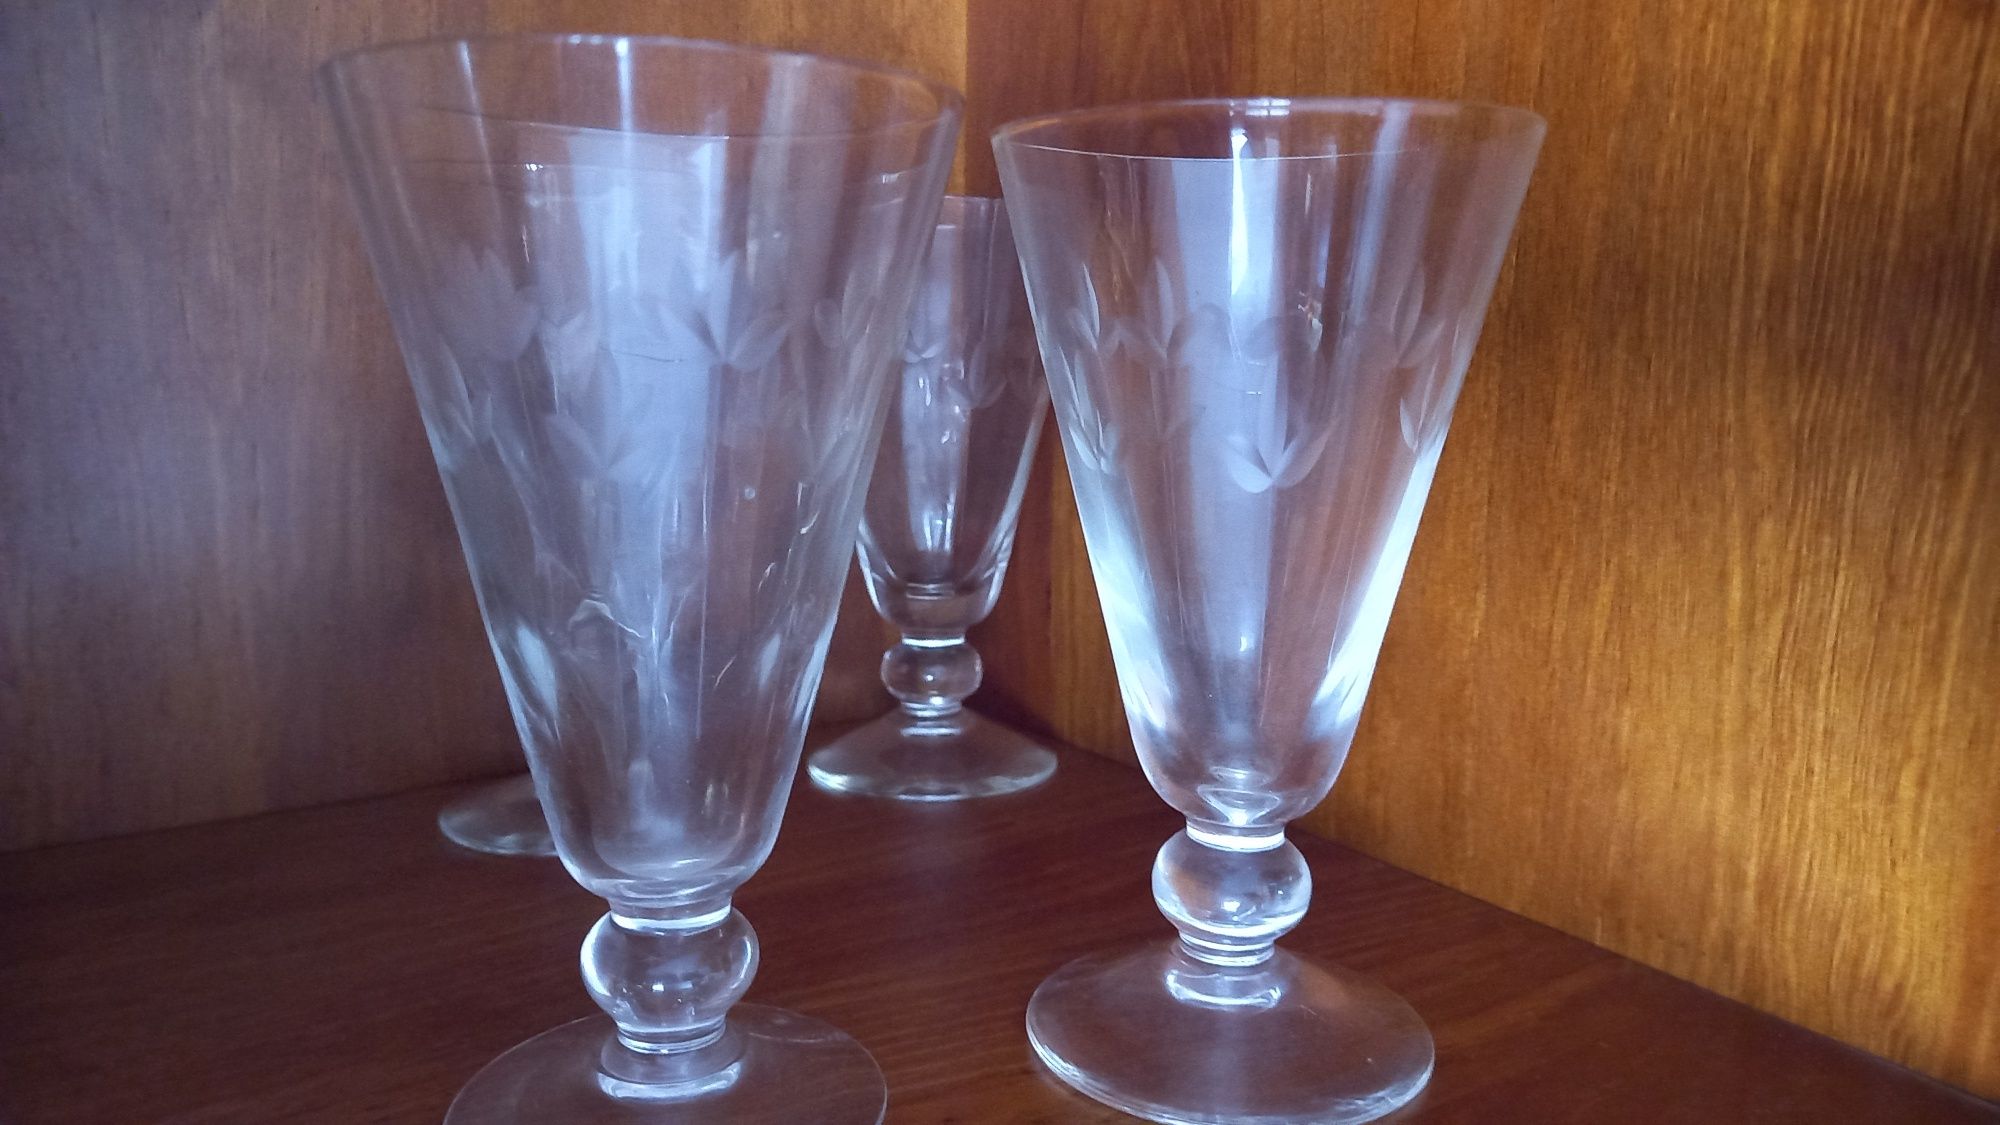 Vendo 4 copos de cristal antigo entrego em mão